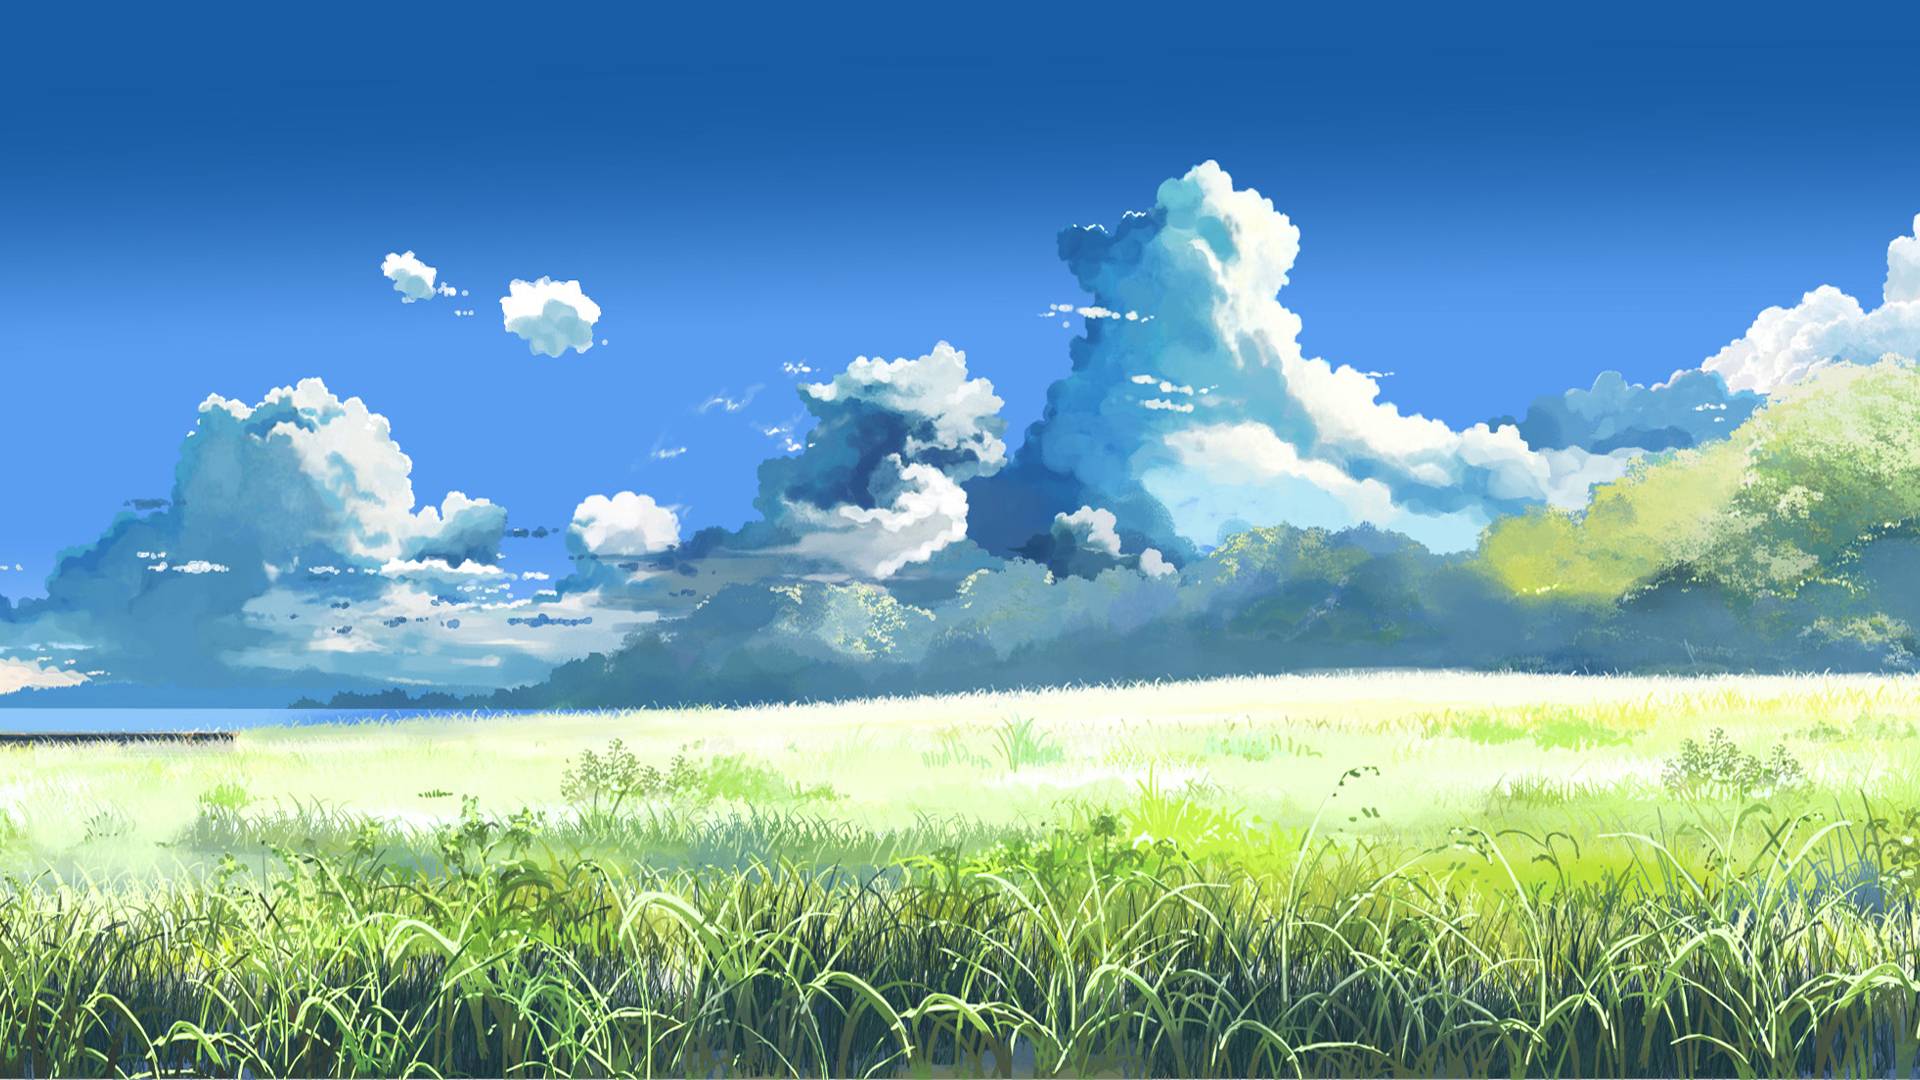 Miyazaki wallpapers